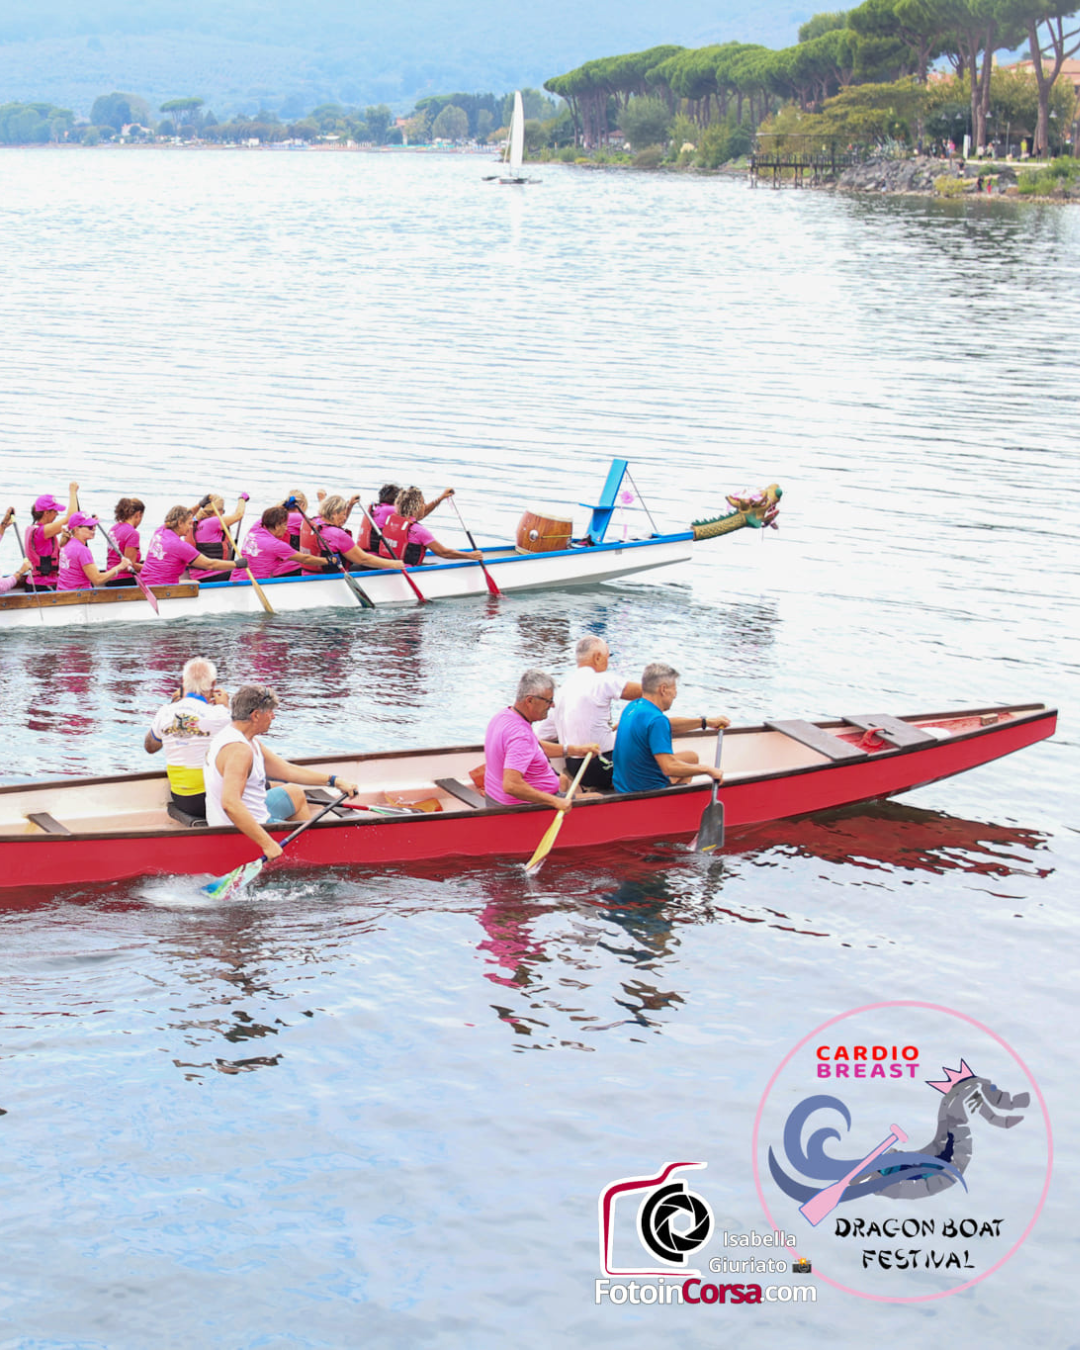 Immagine di Cardio-Breast Dragon Boat Festival